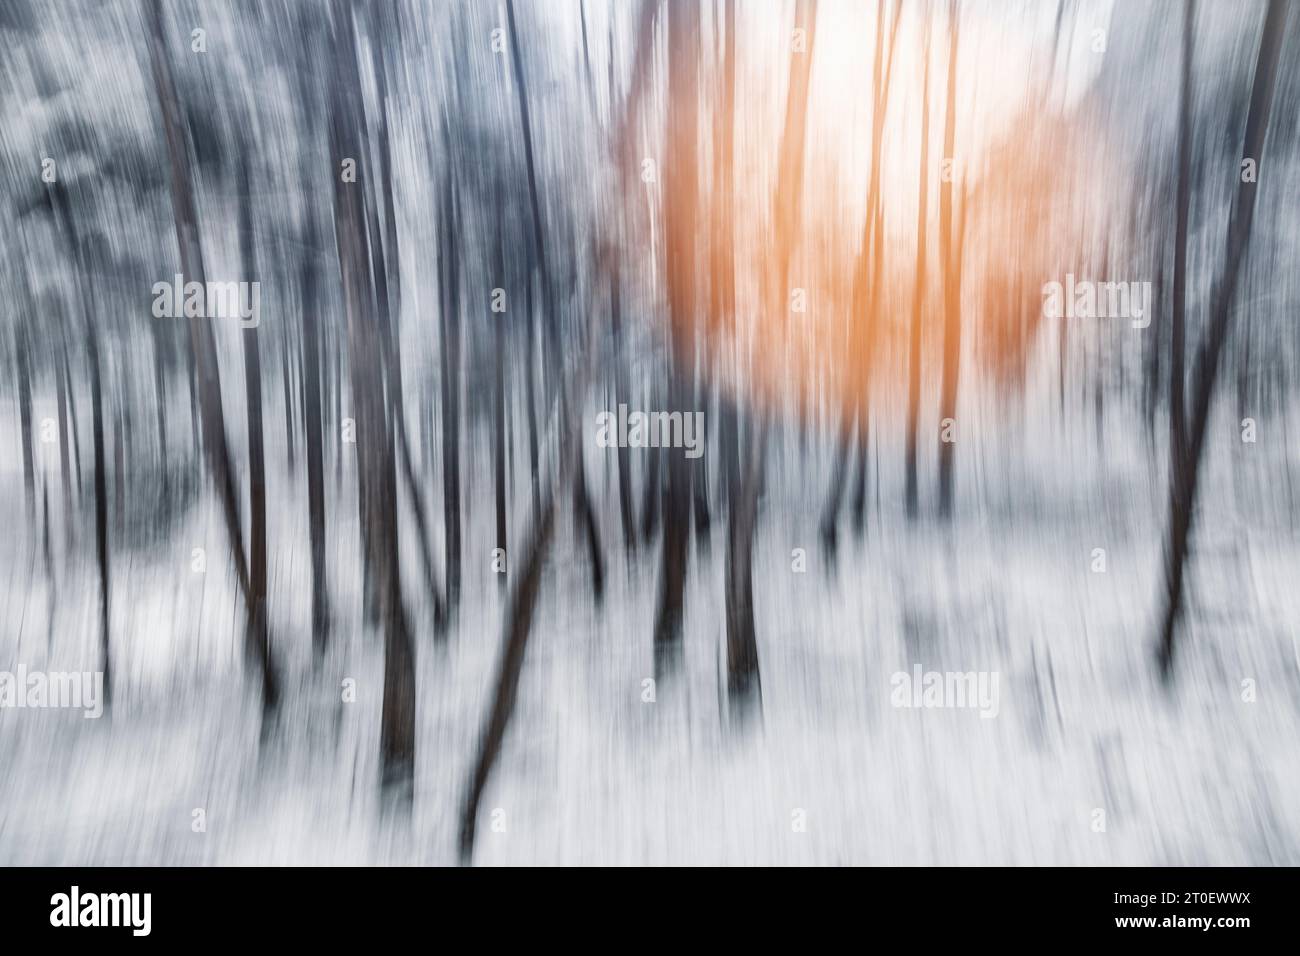 Italia, Veneto, provincia di Belluno, Dolomiti, immagine astratta di una foresta decidua in inverno con neve e una sorgente luminosa sullo sfondo Foto Stock